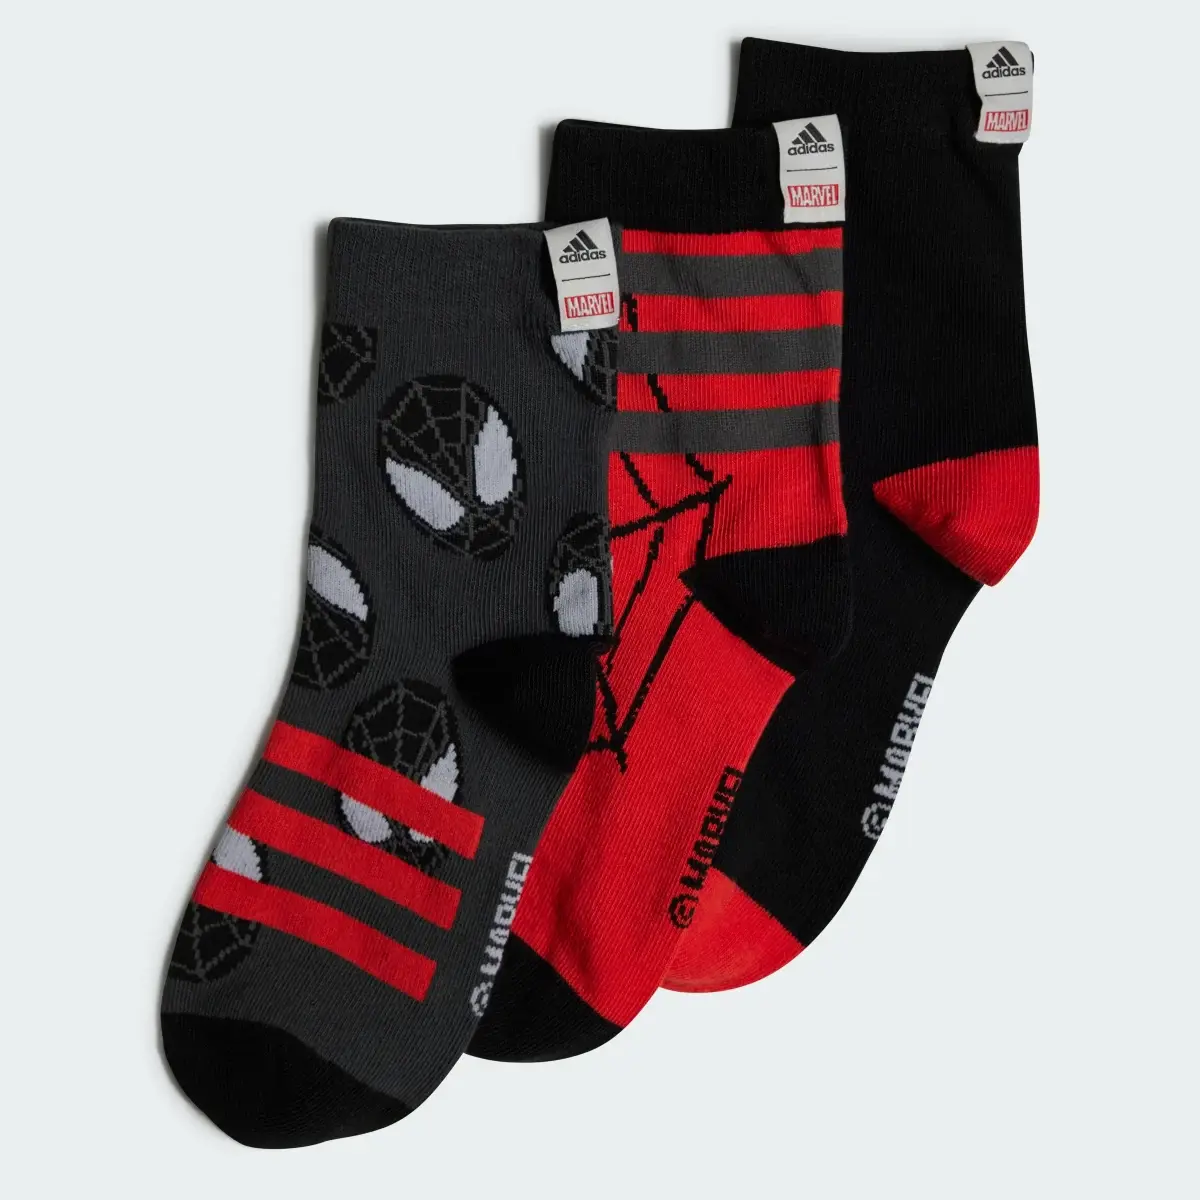 Adidas Calcetines clásicos Marvel Spider-Man. 1